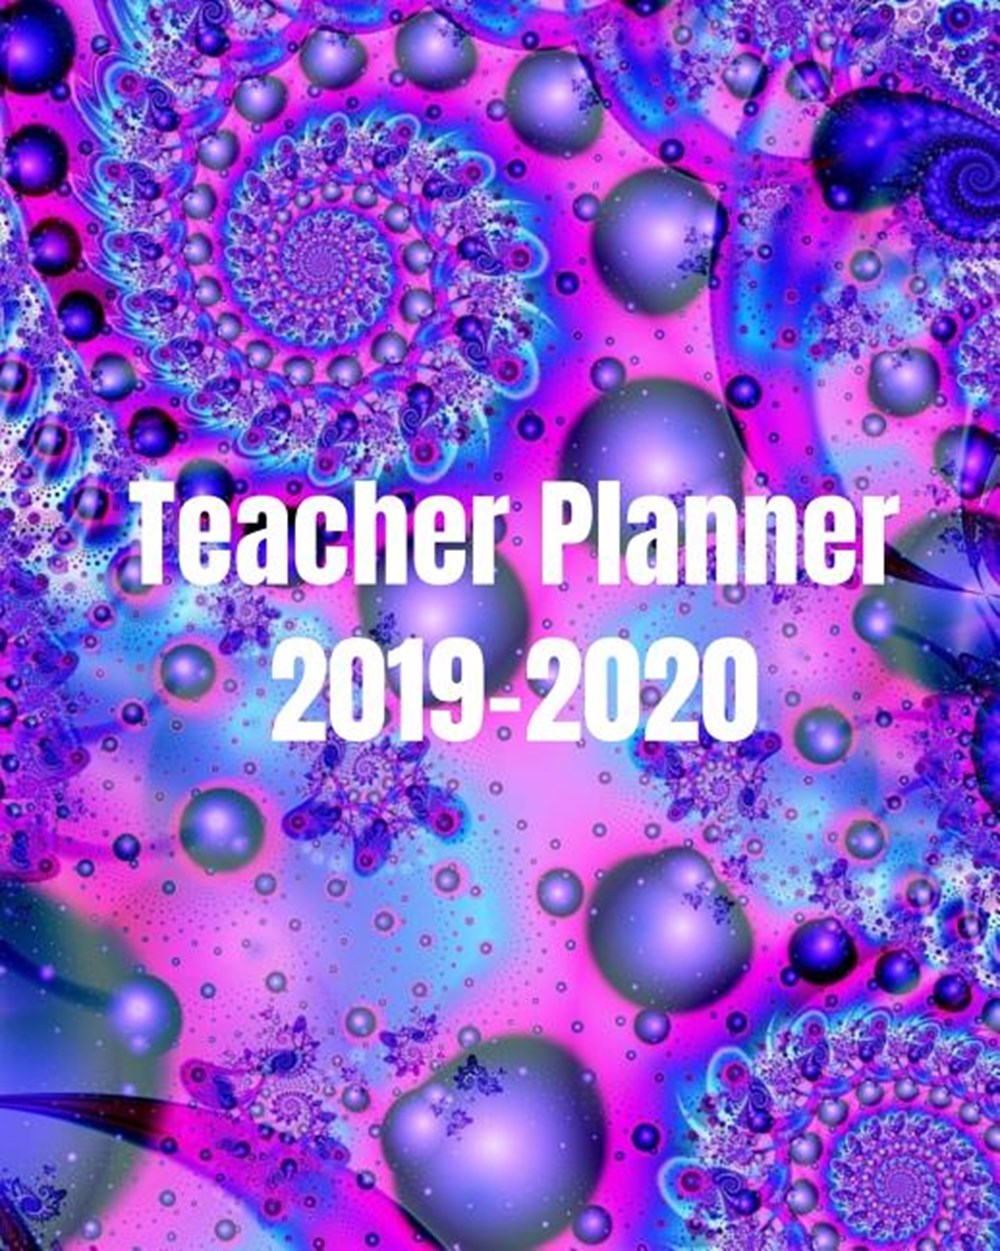 Teacher Planner 2019 - 2020 Cute Classroom Organizer For Teachers